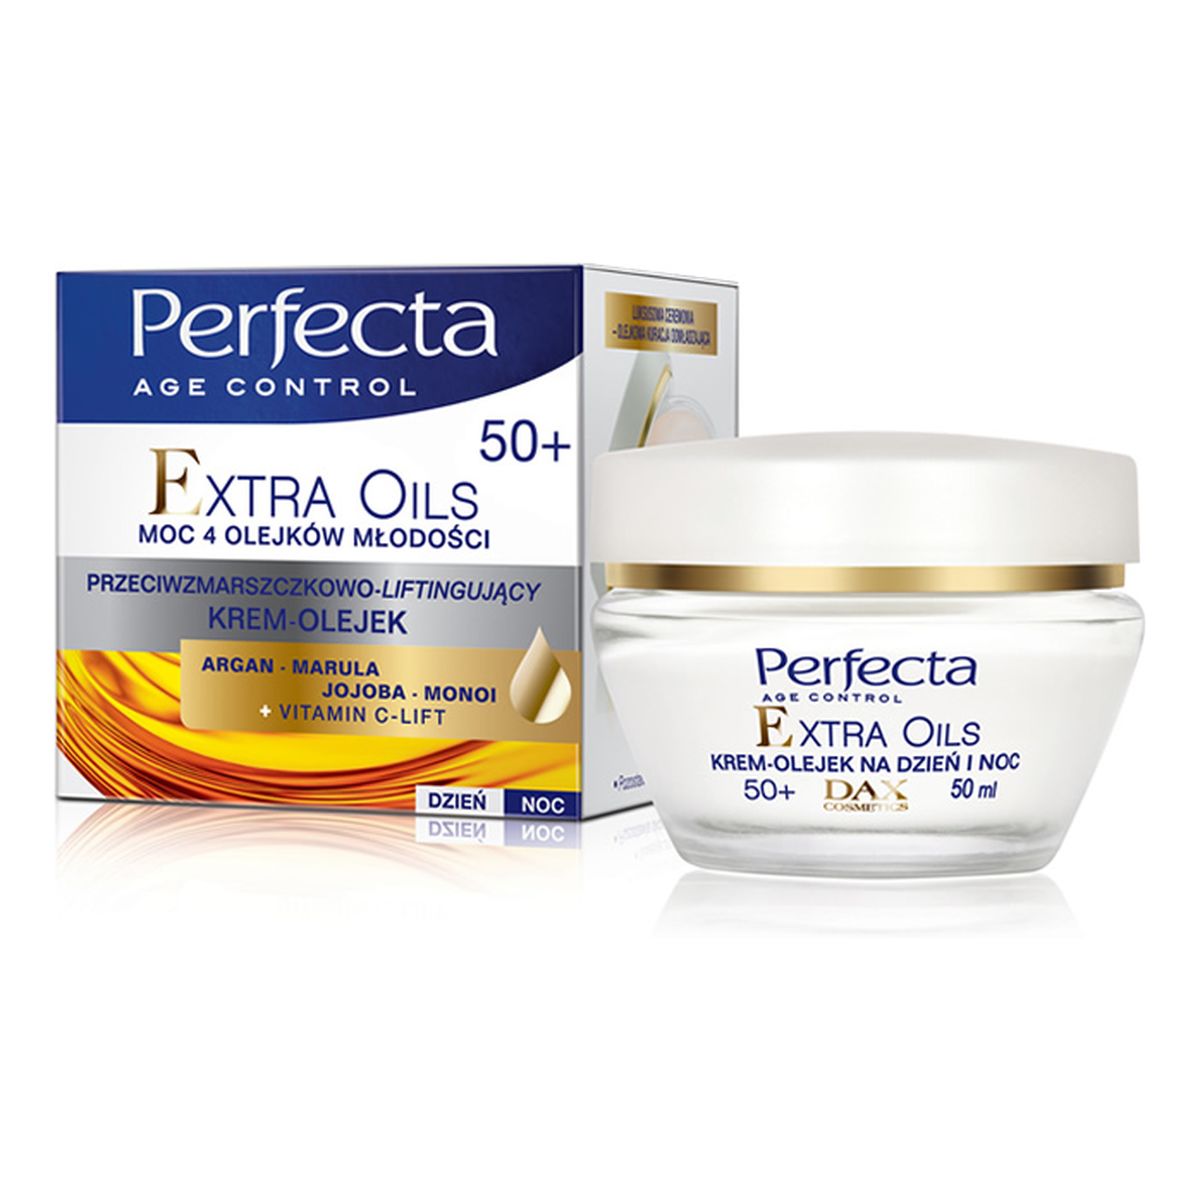 Perfecta Age Control Extra Oils 50+ Krem-Olejek Przeciwzmarszczkowo-Liftingujący Na Dzień i Noc 50ml